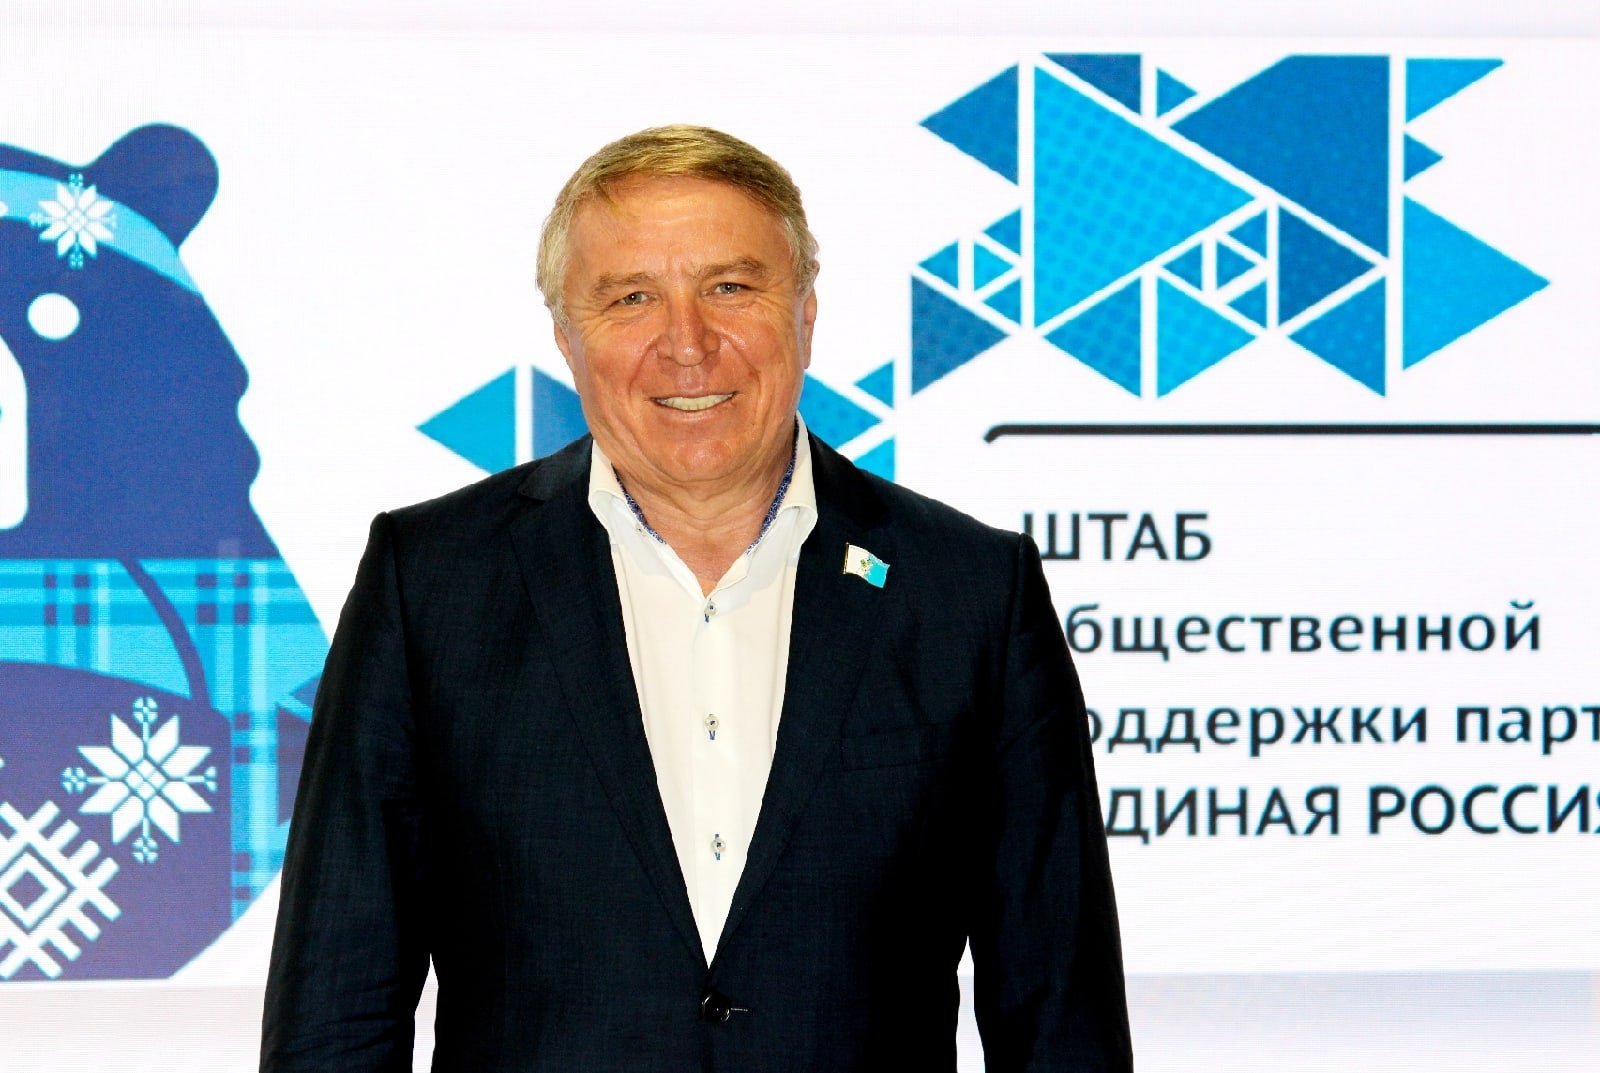 Фарит Губаев стал руководителем региональной общественной приемной партии Единая Россия в Удмуртии